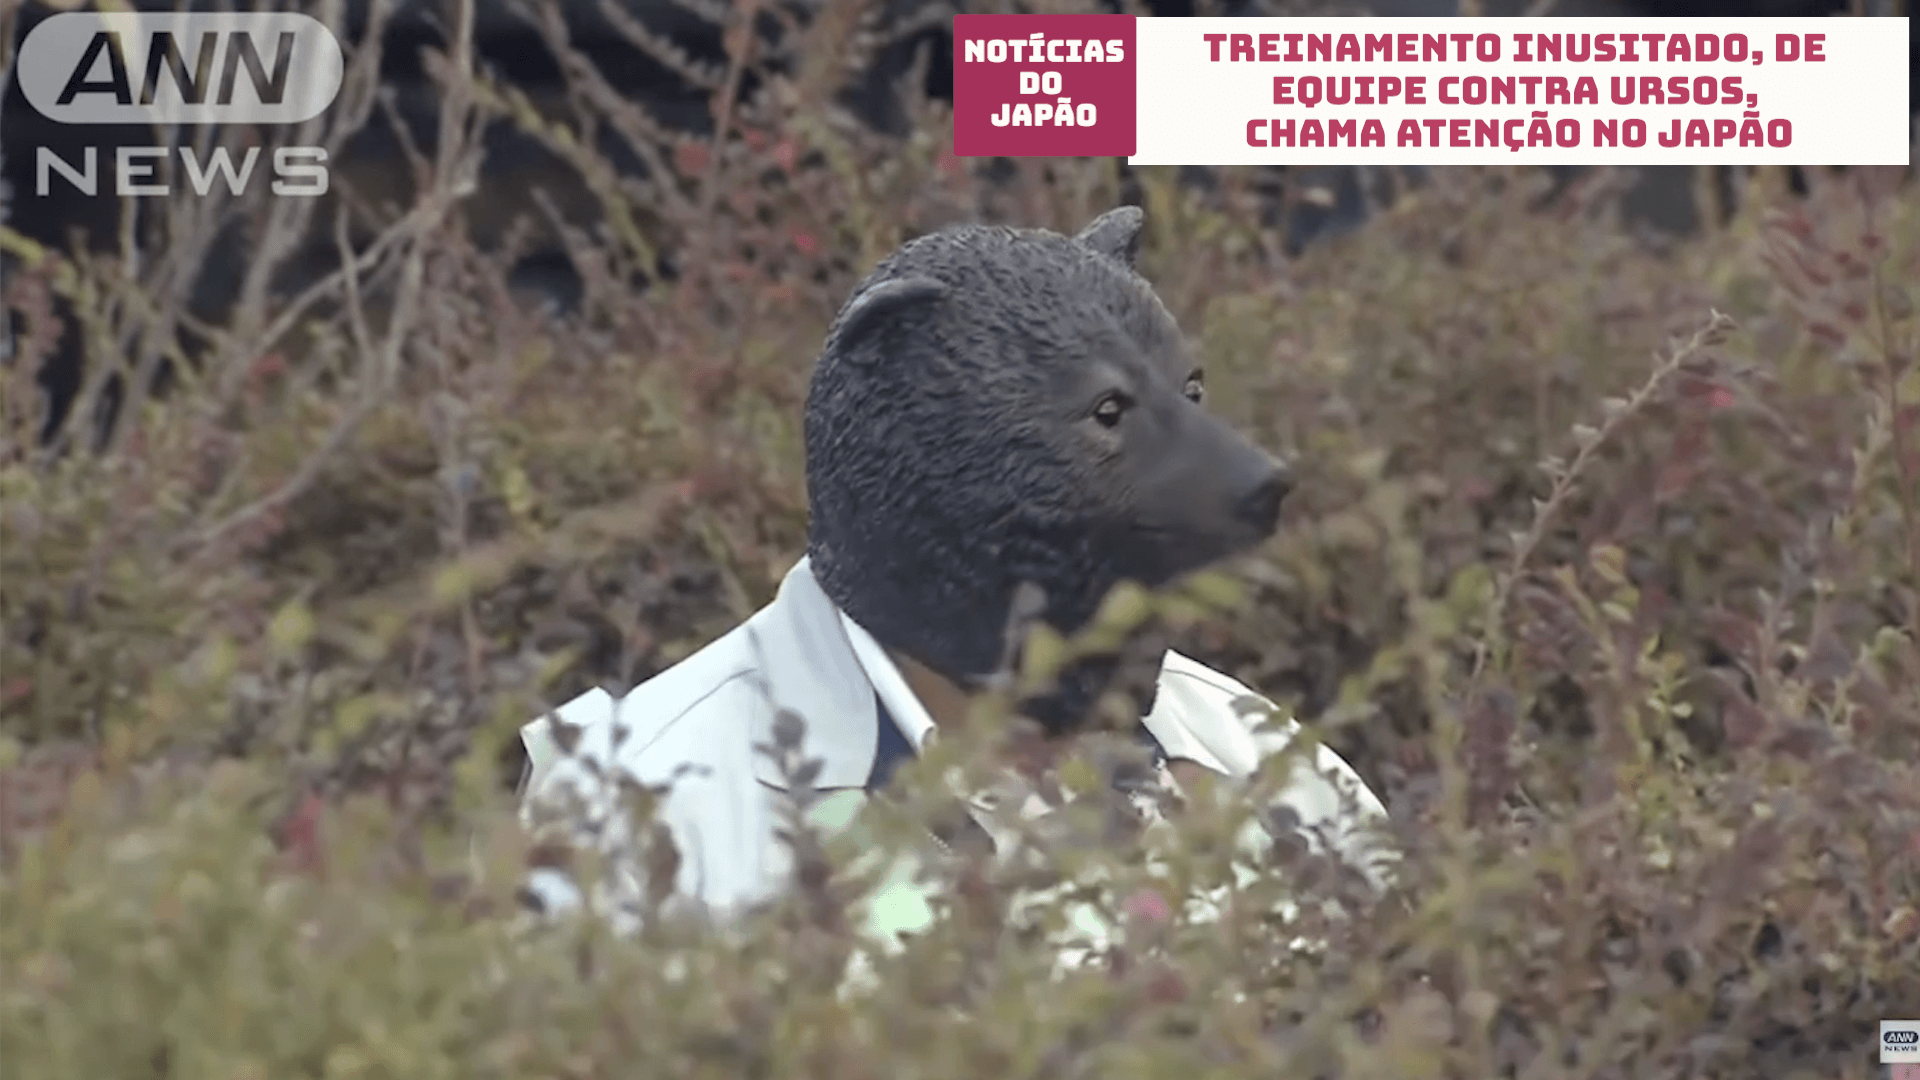 Treinamento inusitado, de equipe contra ursos, chama atenção no Japão 